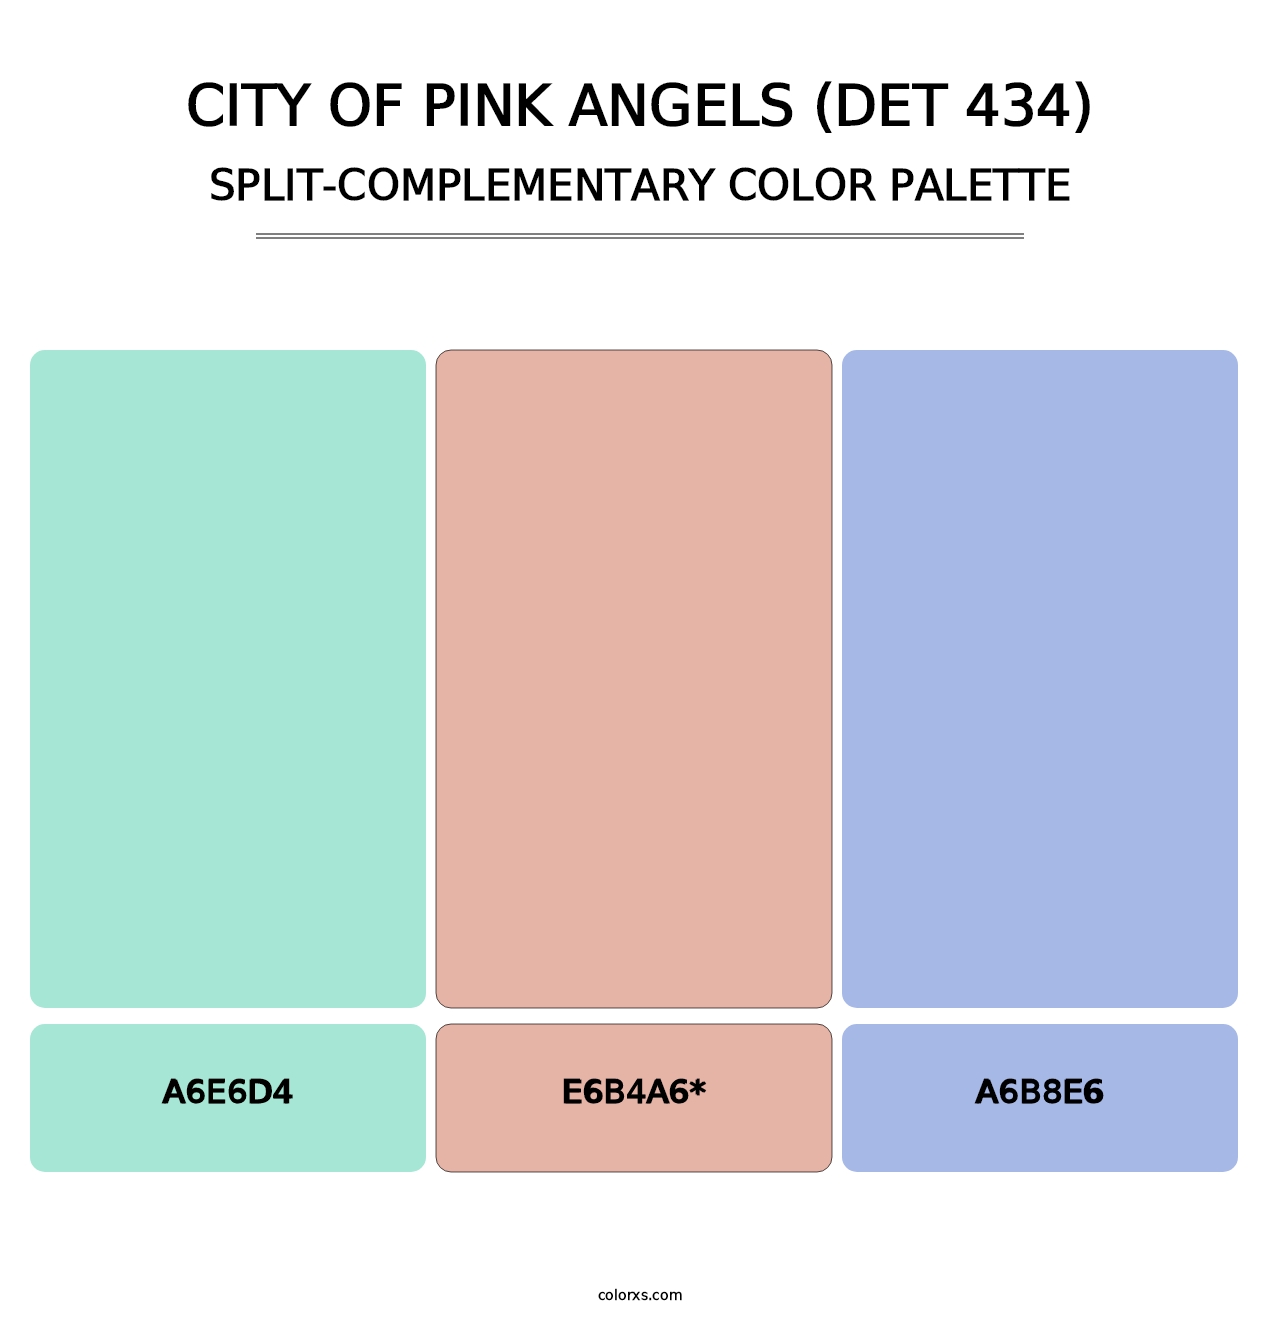 City of Pink Angels (DET 434) - Split-Complementary Color Palette